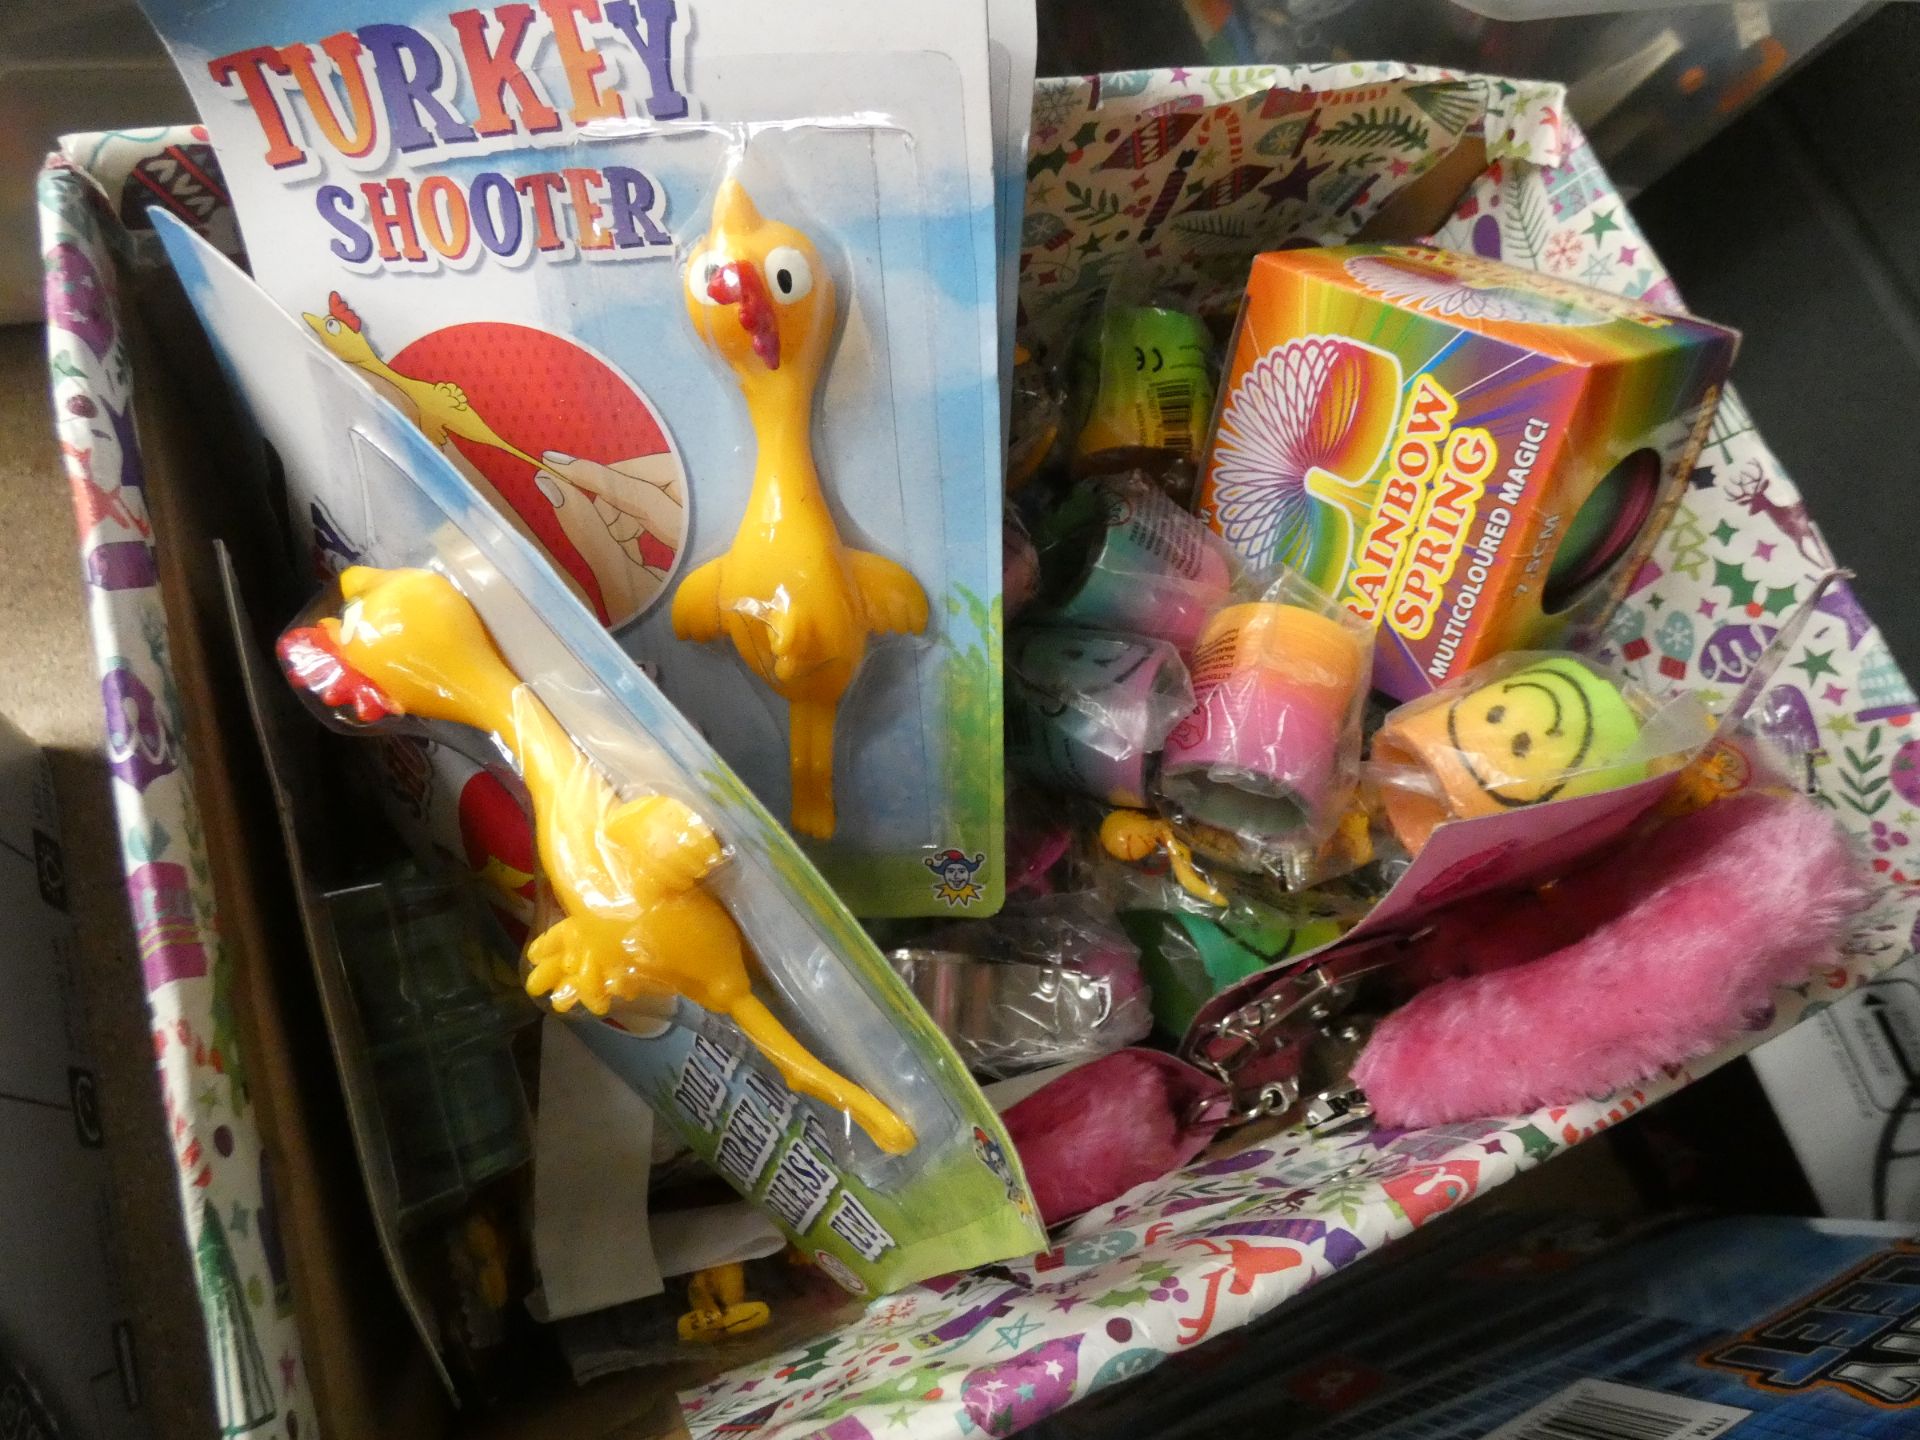 Small box containing mixed novelty toys